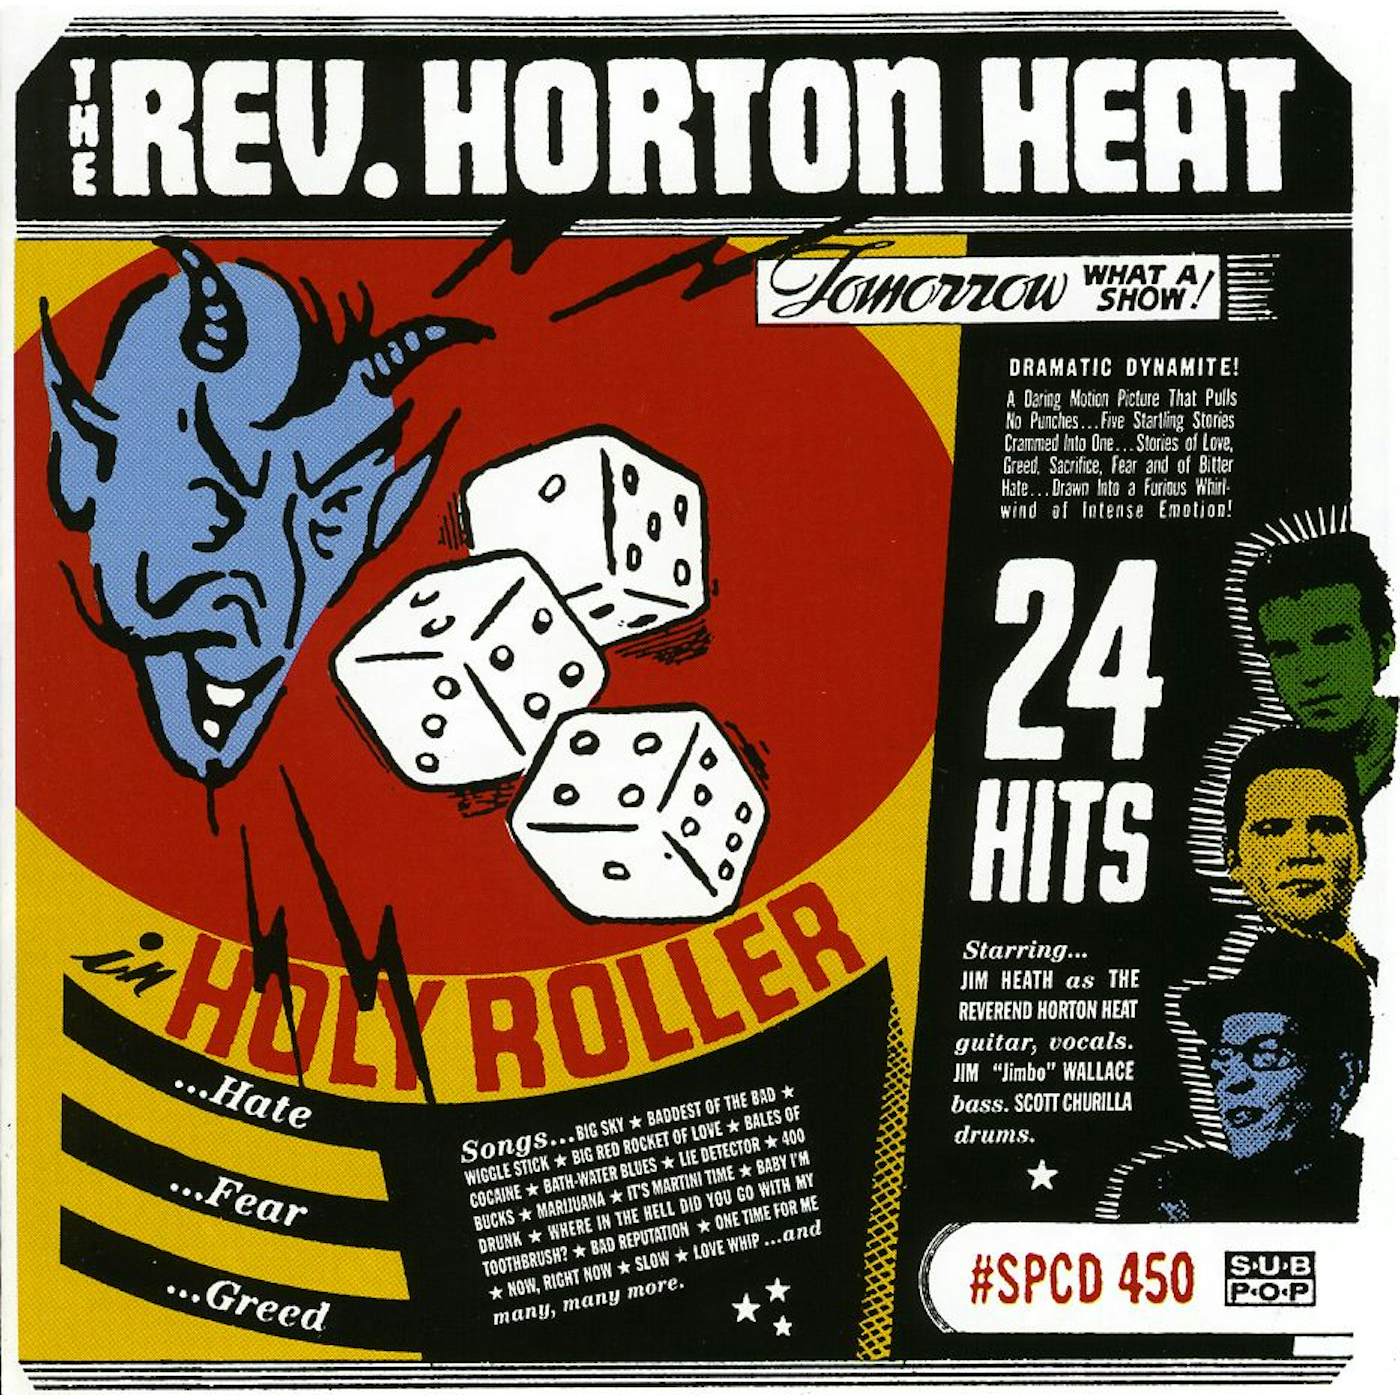 The Reverend Horton Heat HOLY ROLLER CD